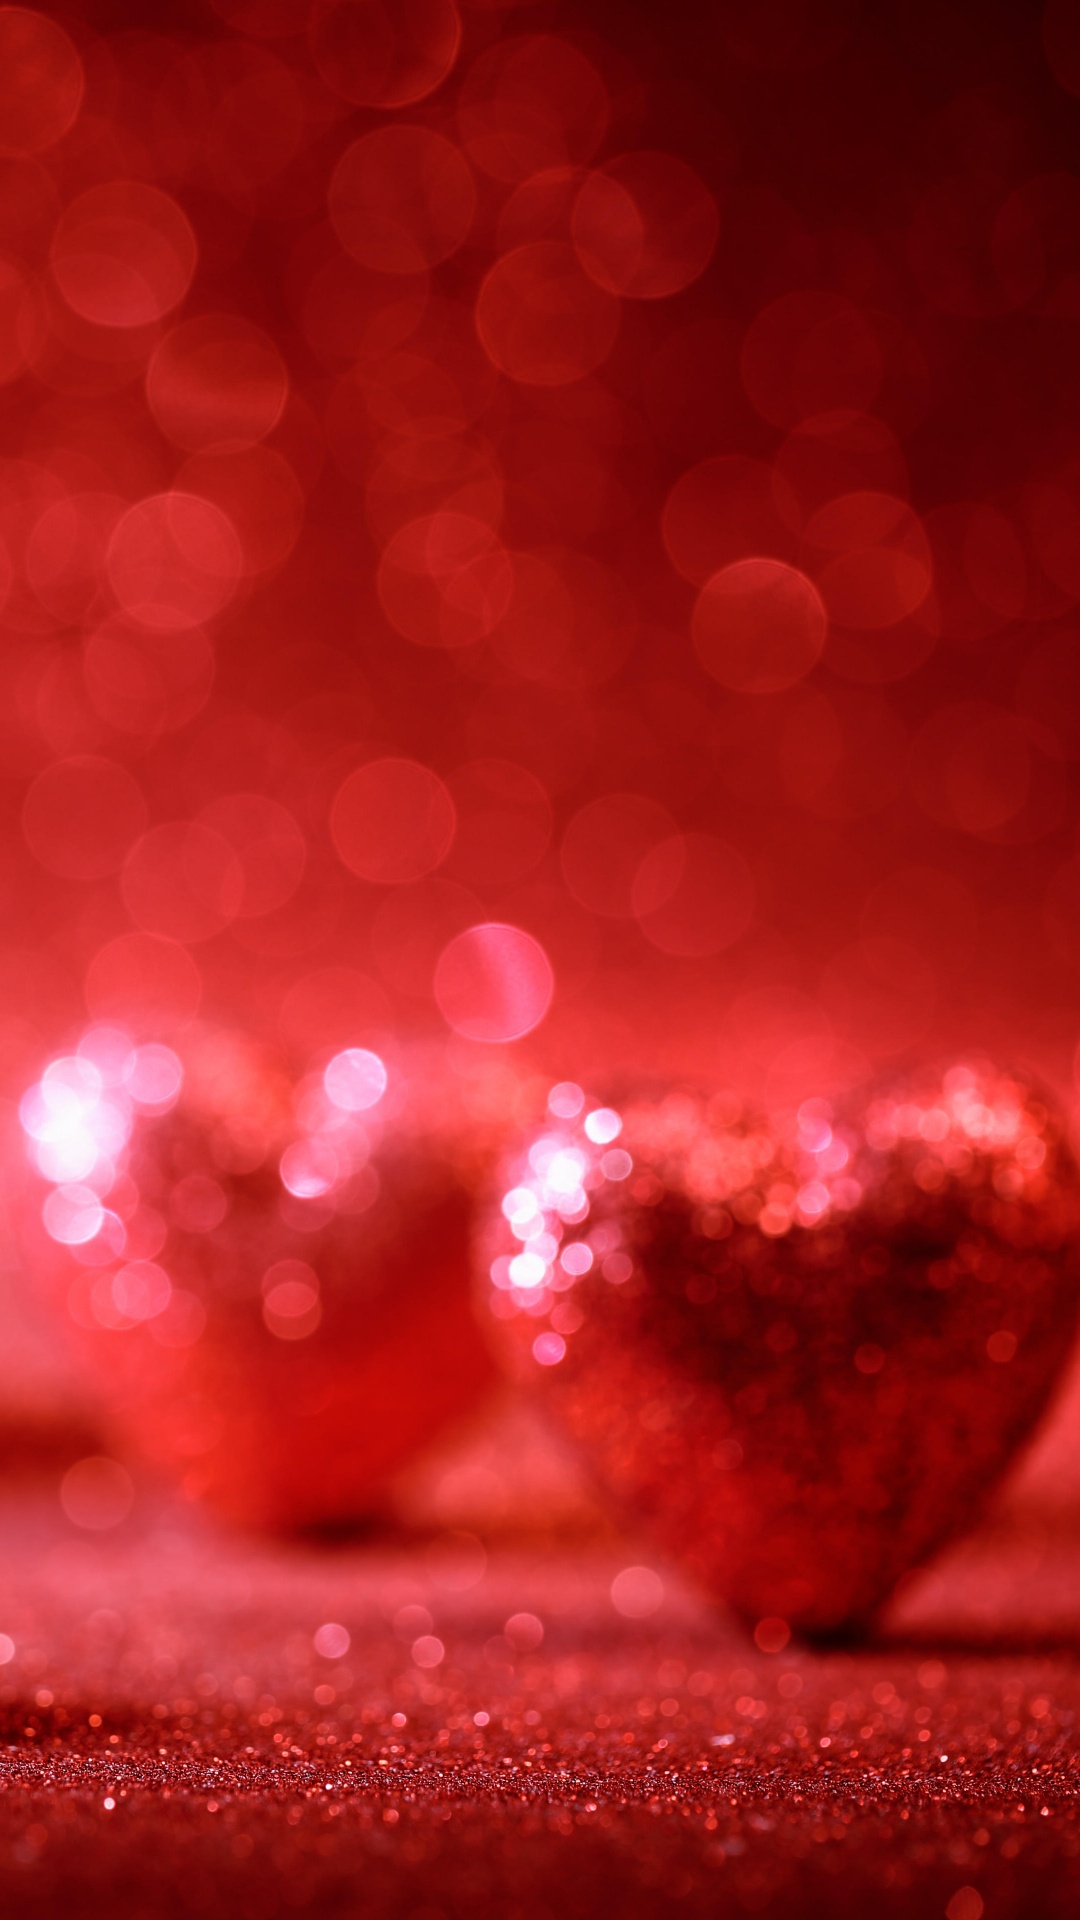 el Día de San Valentín, Coraz, Rojo, Amor, Romanticismo. Wallpaper in 1080x1920 Resolution